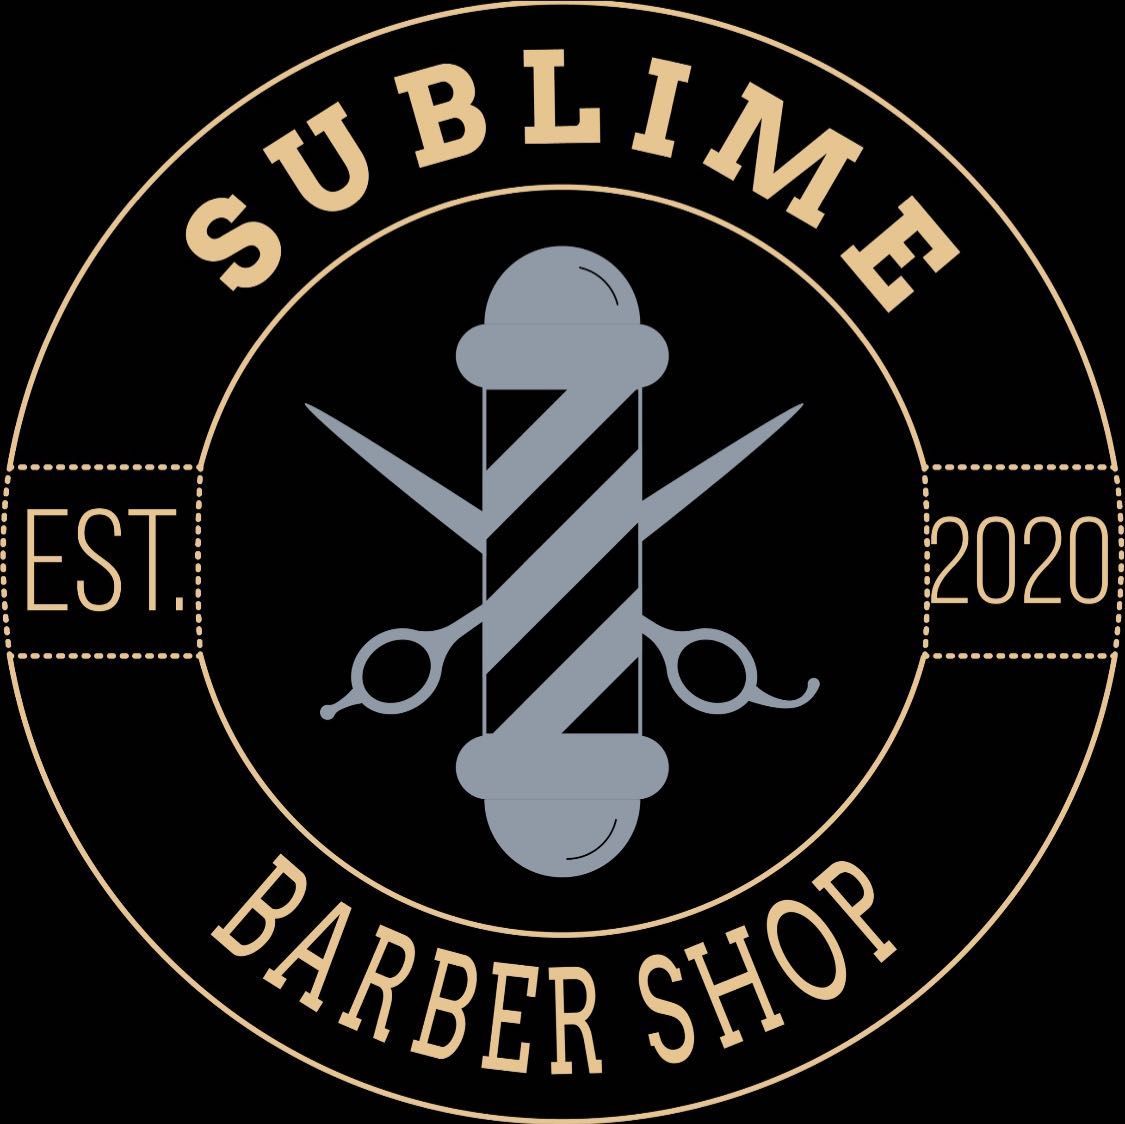 Sublime Barbershop, 1020 Tierra del Rey, Suite B, Chula Vista, 91910